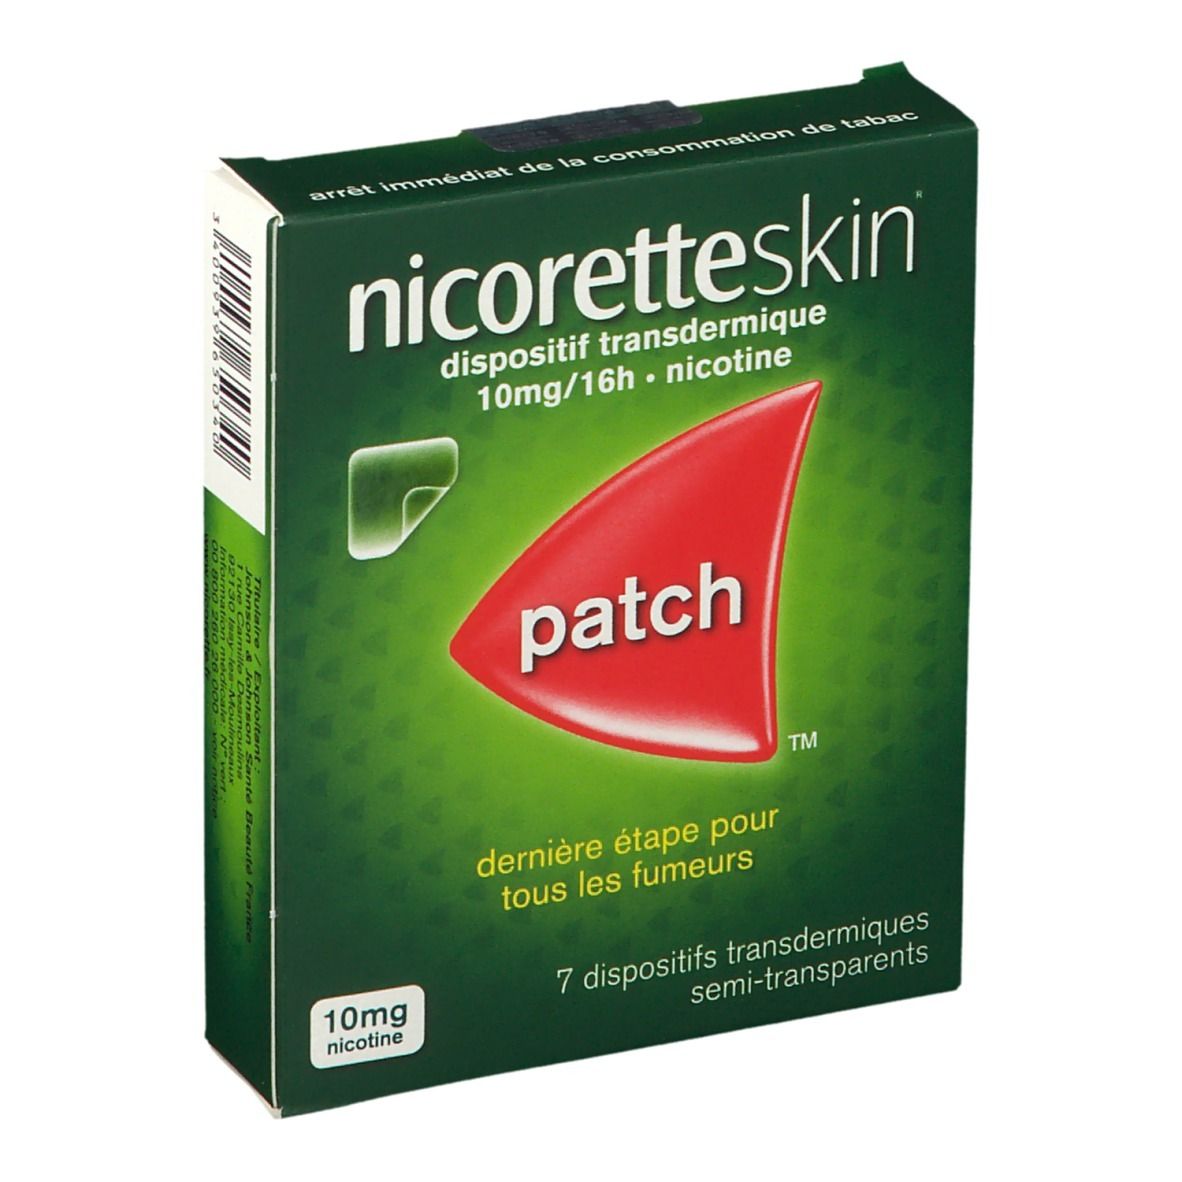 nicoretteskin® 10 mg/16h